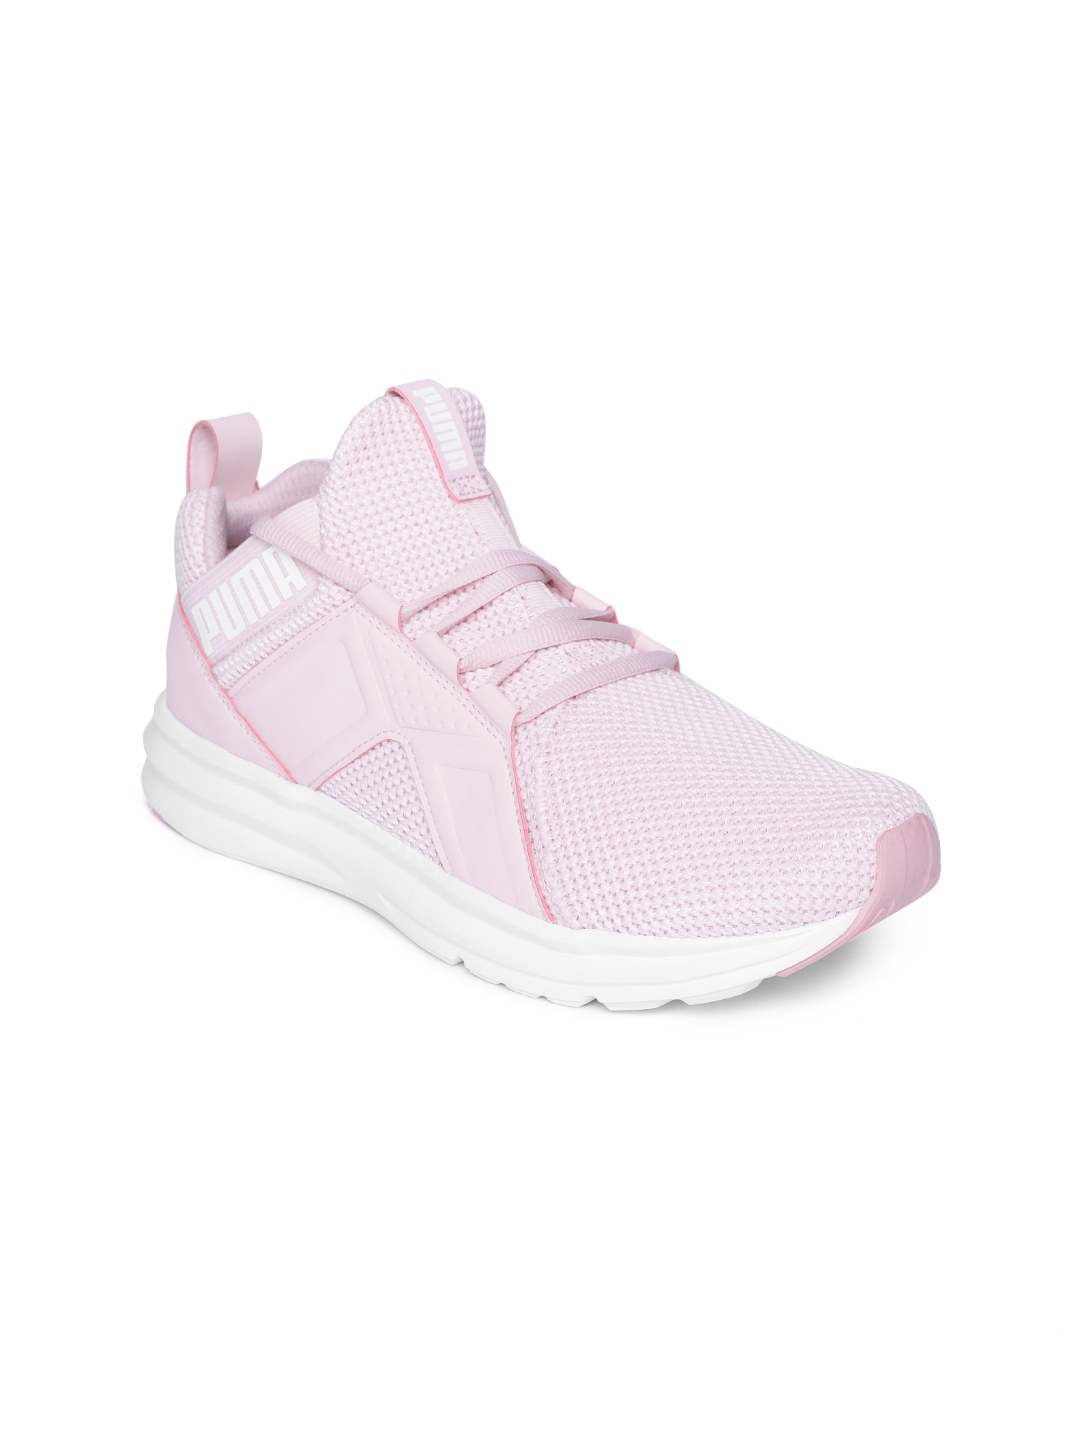 Buy Puma Women Pink Enzo Running Shoes - Sports Shoes for Women 8087977 | Myntra